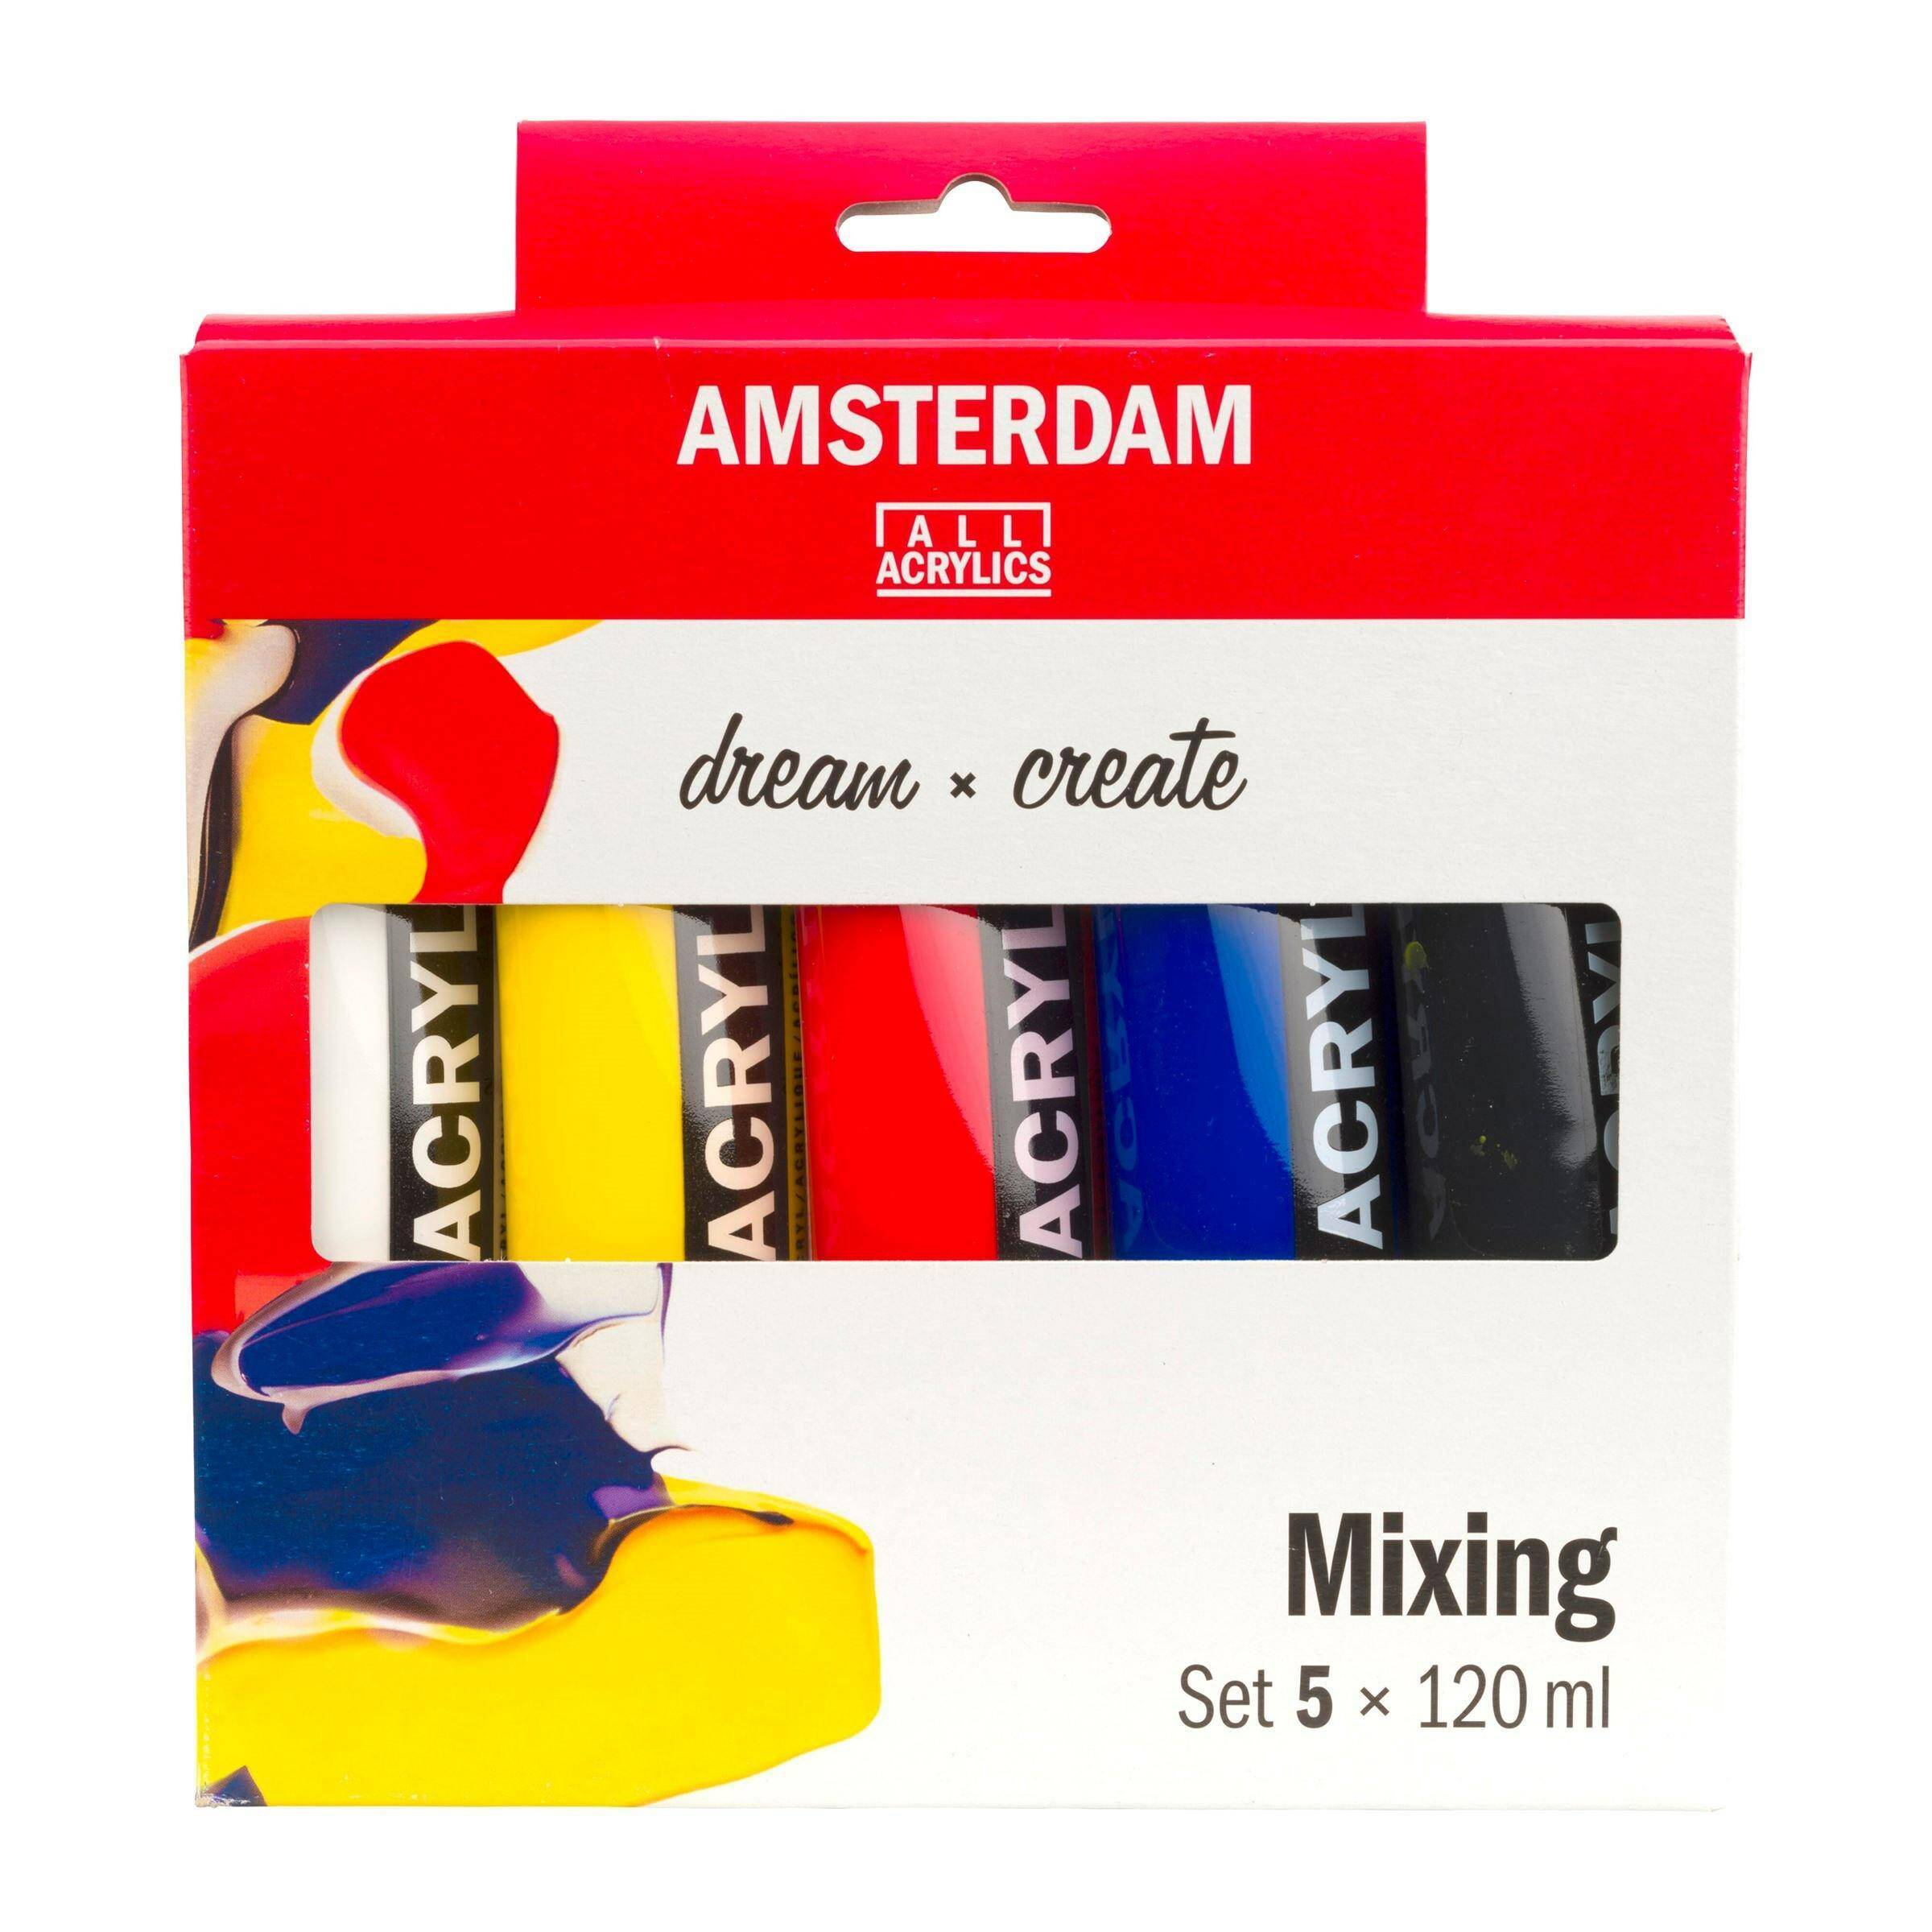 Zestaw Amsterdam Acrylic 5x120ml Mixing